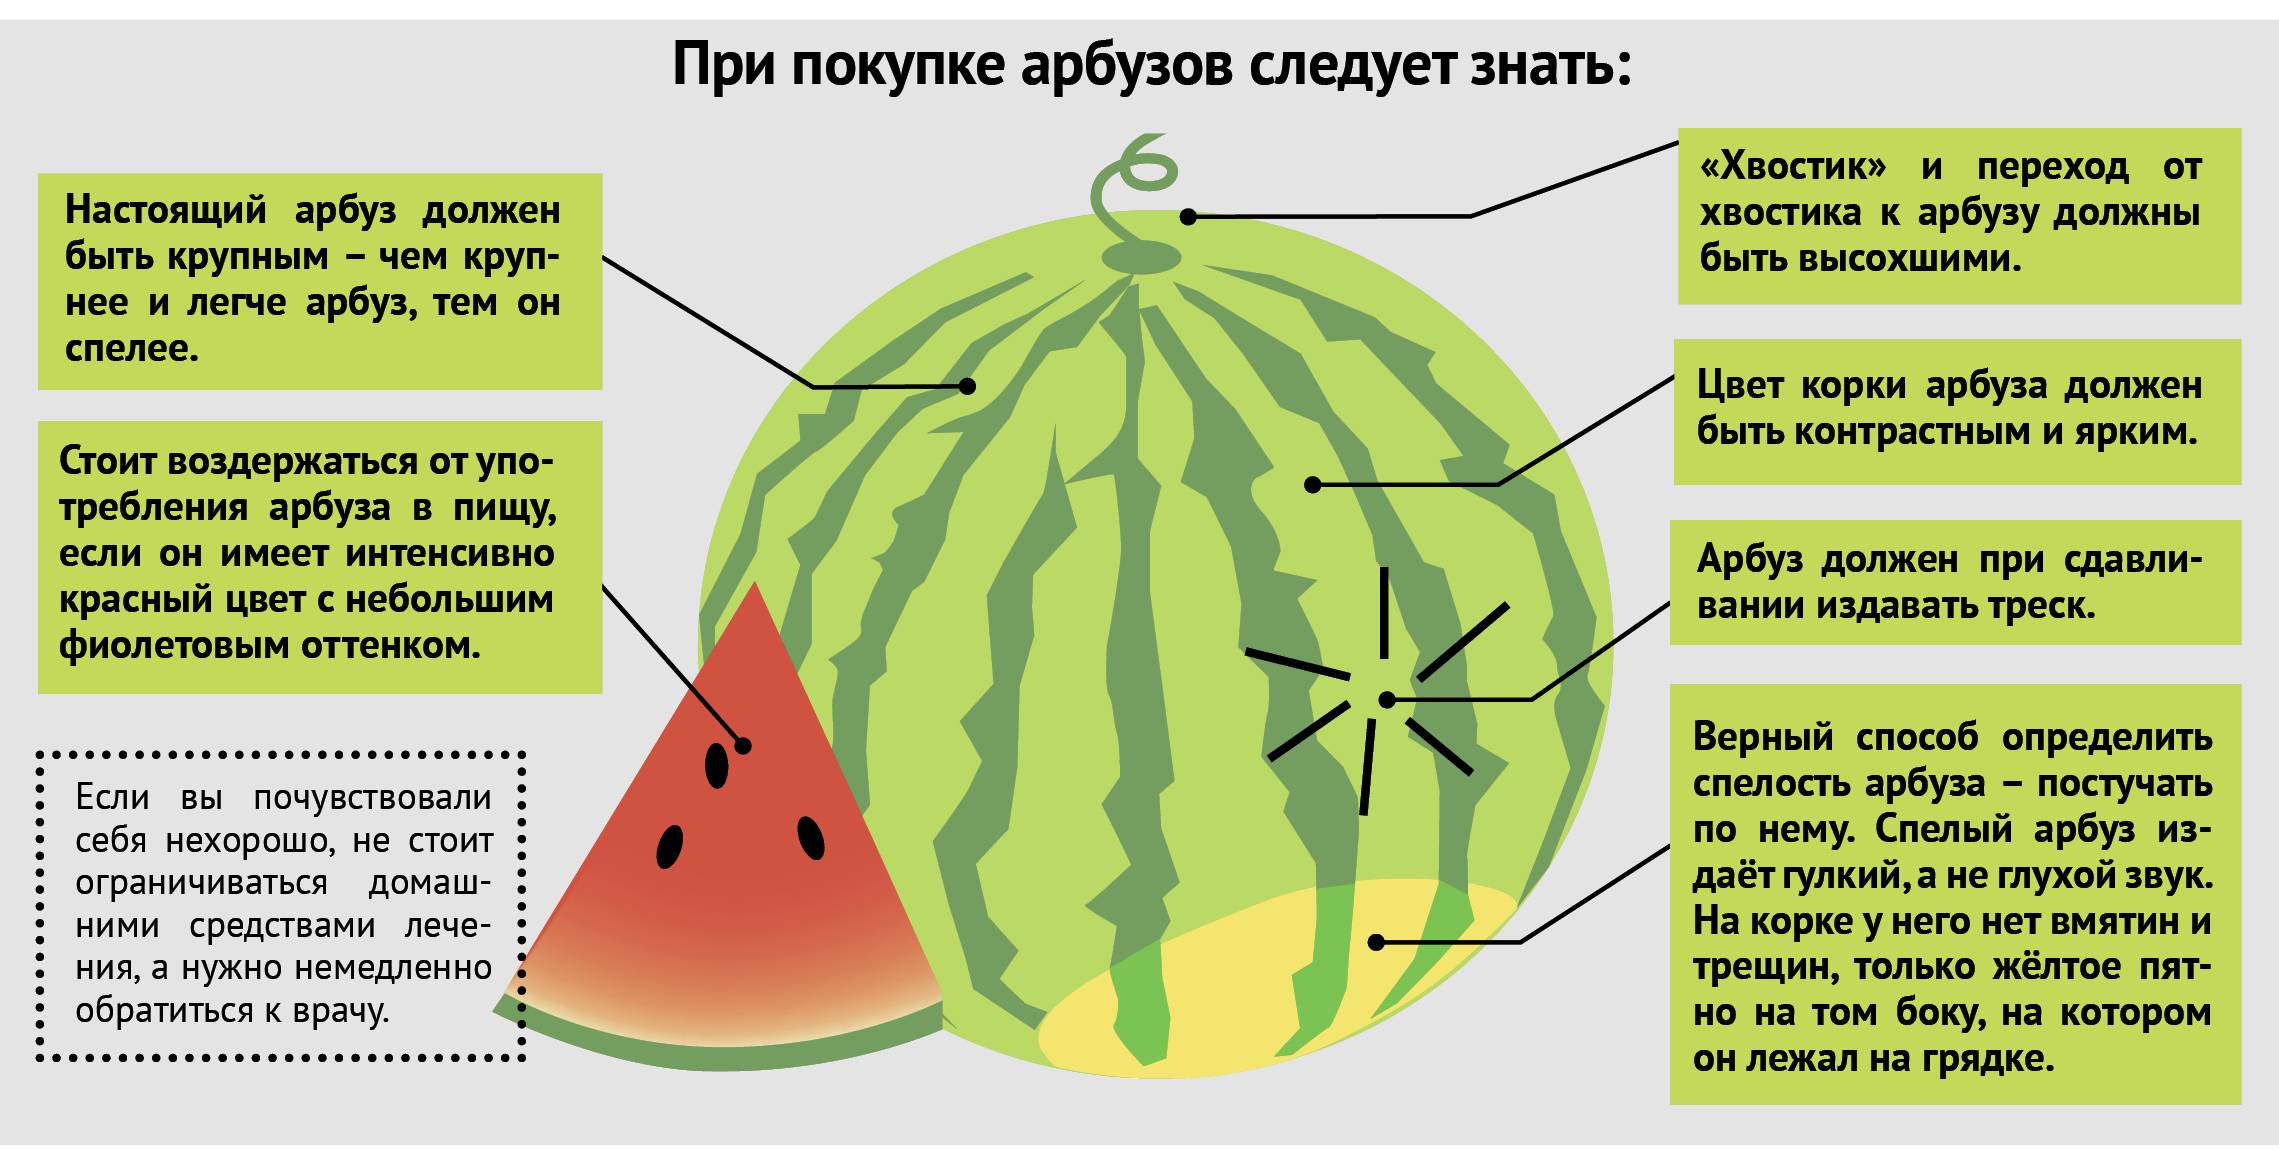 Как определить спелость арбуза на грядке: основные признаки созревания и правила проверки